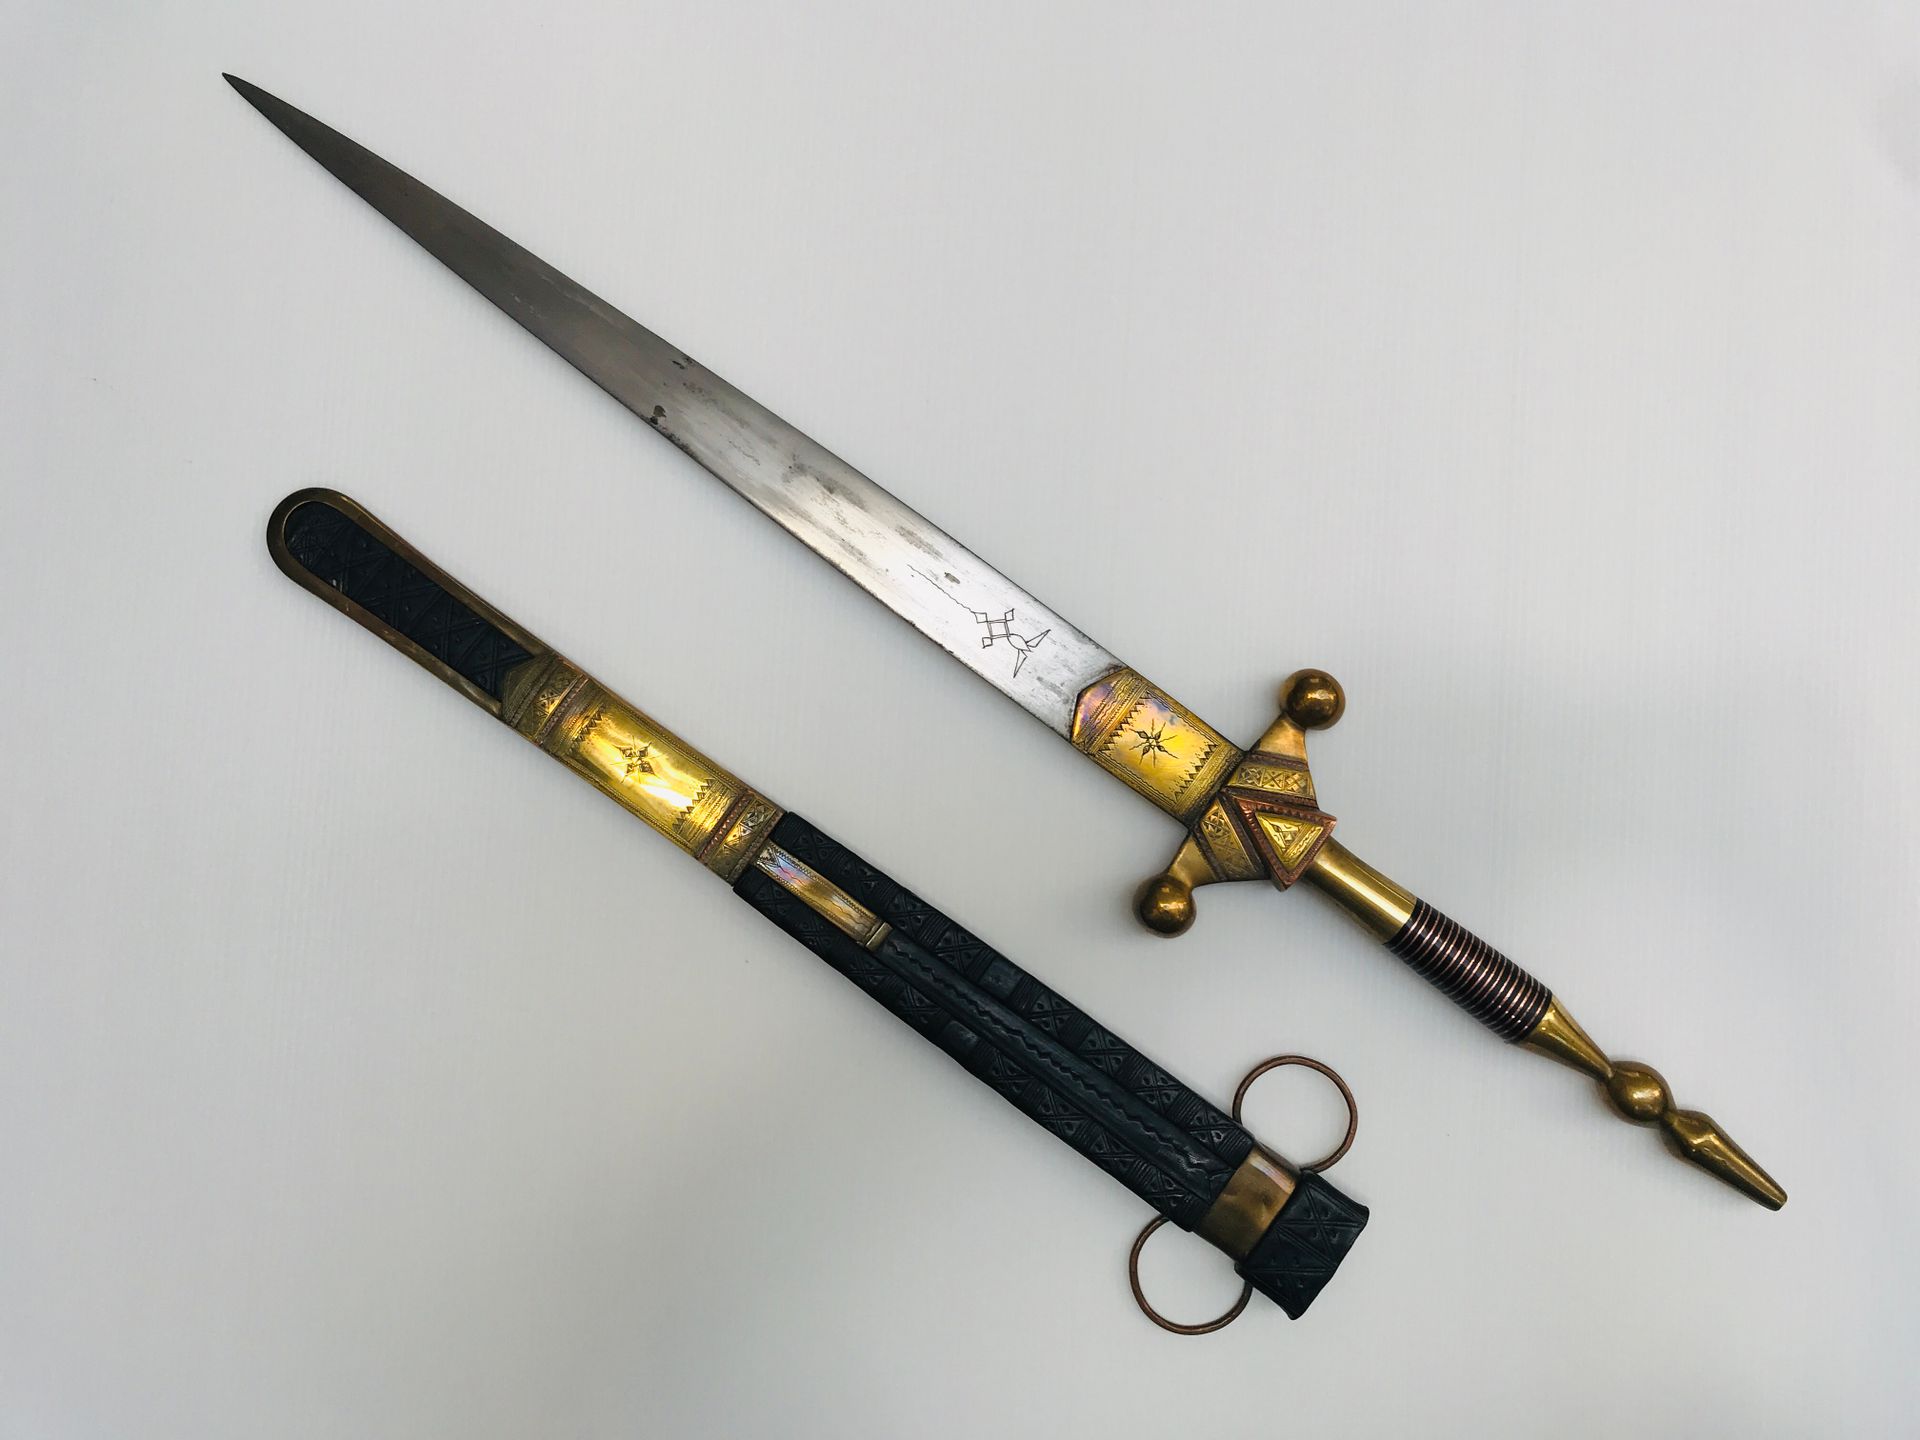 Épée touareg Messing und Kupfer graviert, Lederscheide

L. 77 cm